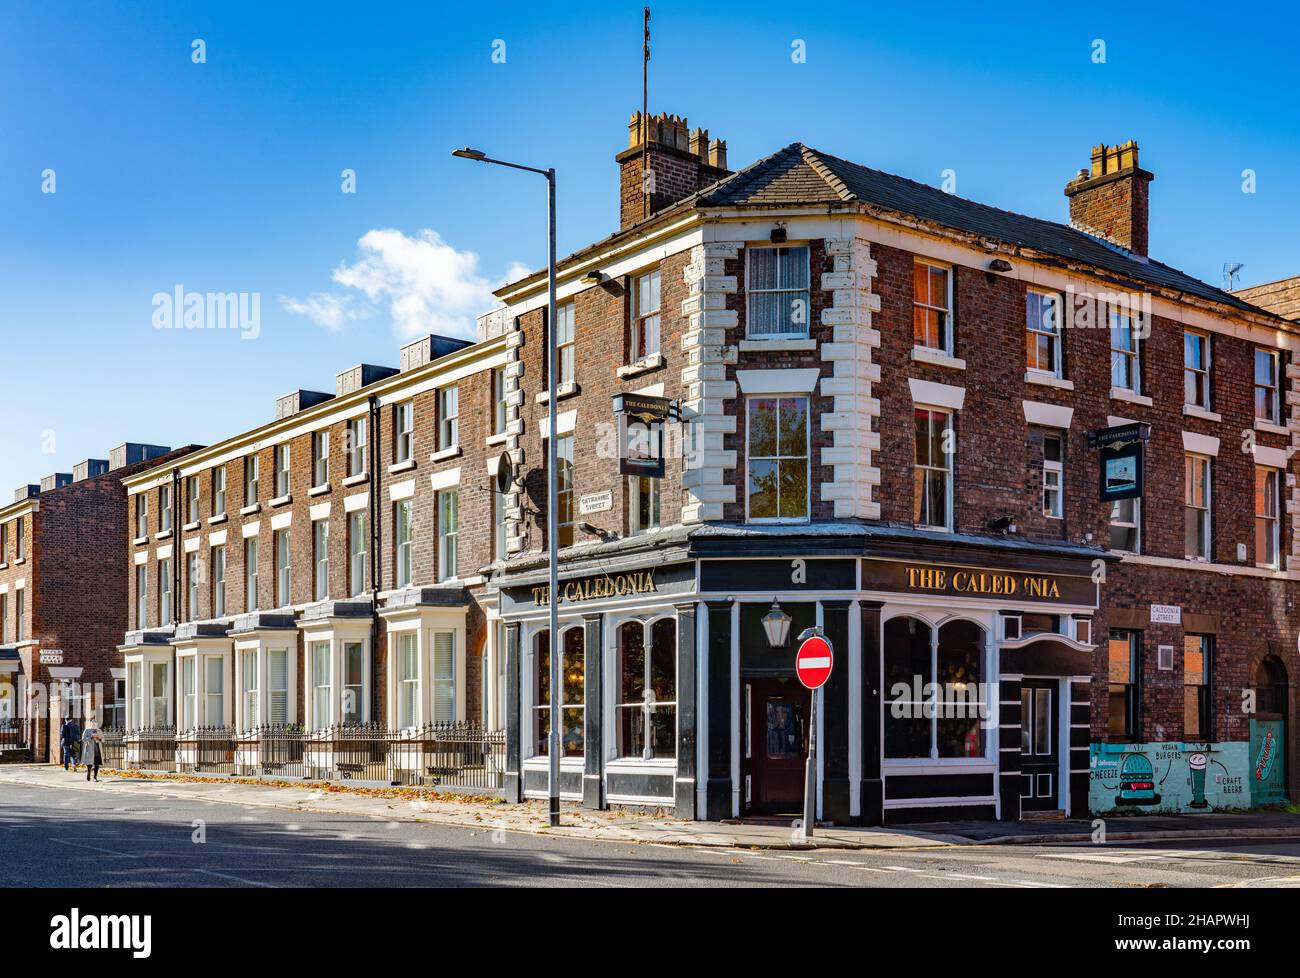 Der Caledonia Pub an der Ecke Caledonia Street und Catherine Street, Liverpool 7. Aufnahme im Oktober 2021. Stockfoto